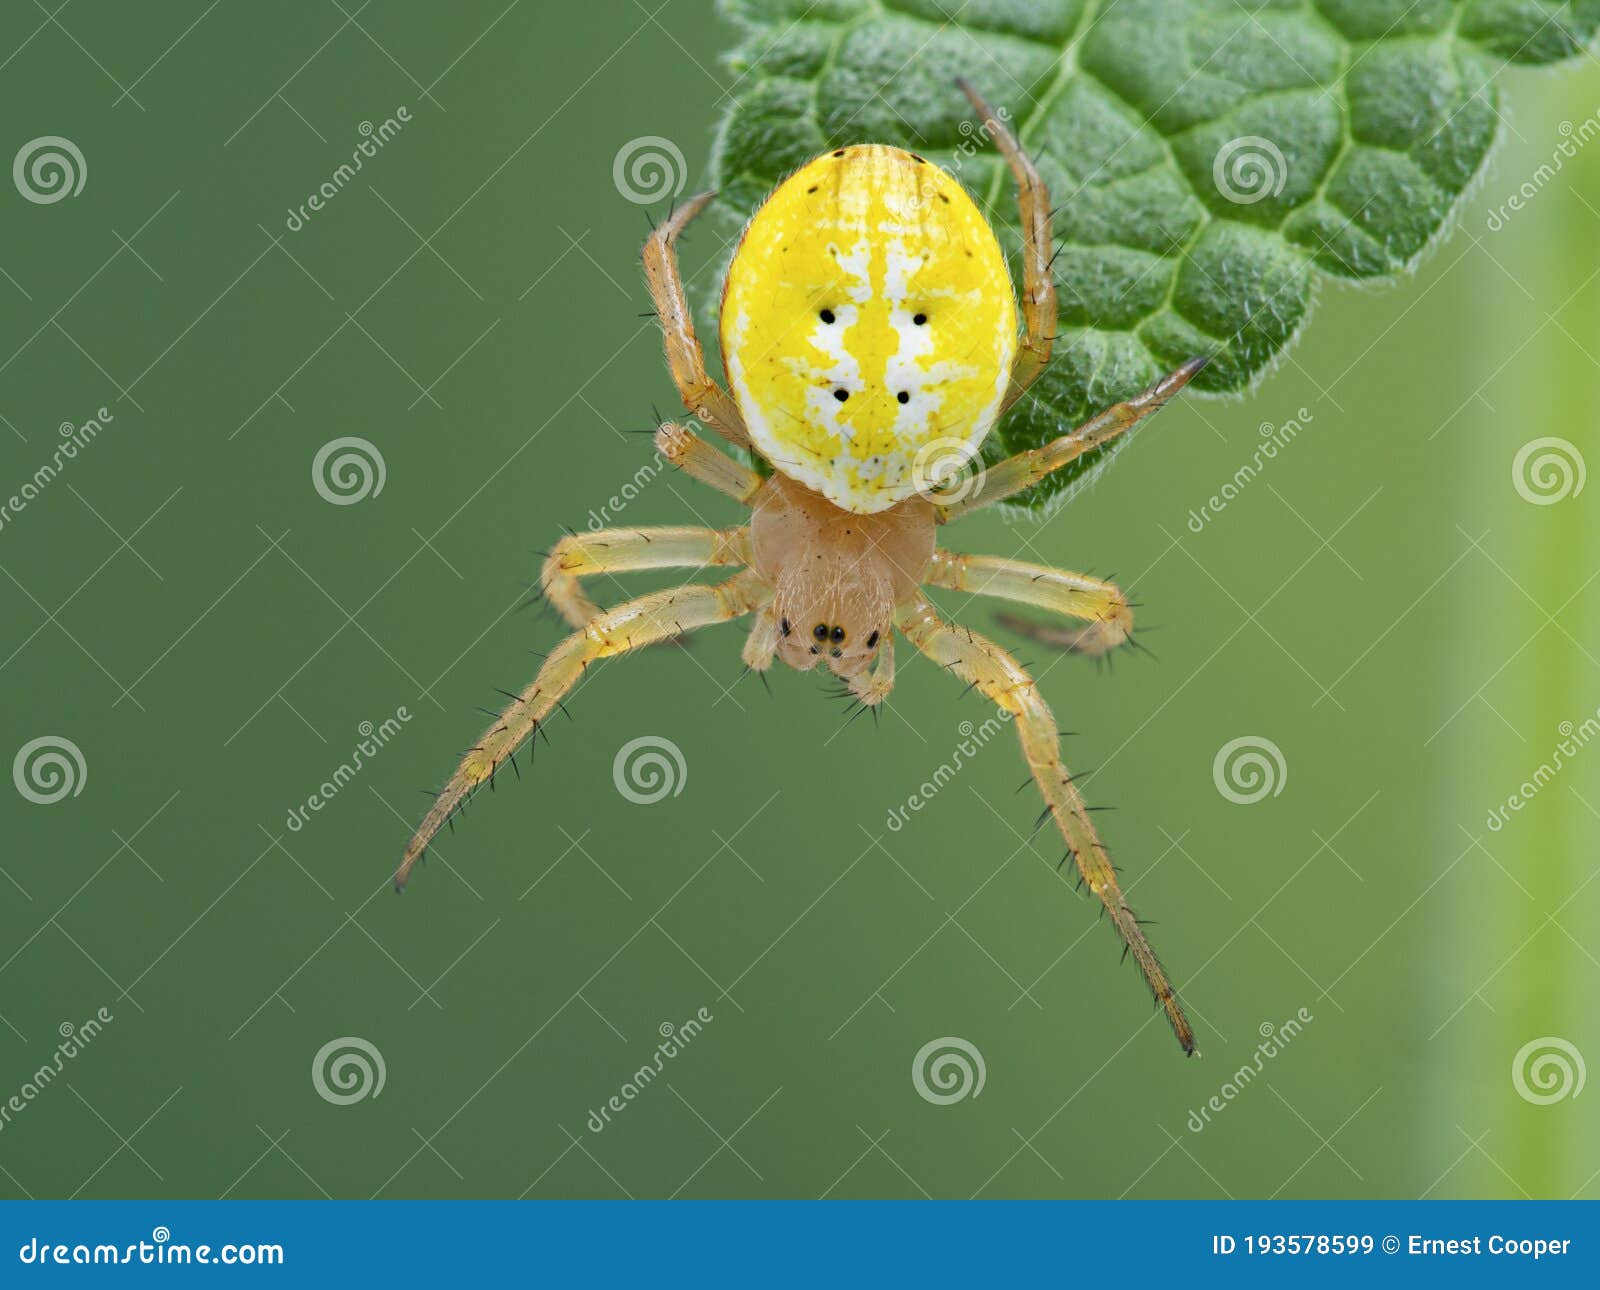 p1010146 colorful sixspotted orbweaver spider, araniella displicata, deas island, bc cecp 2020